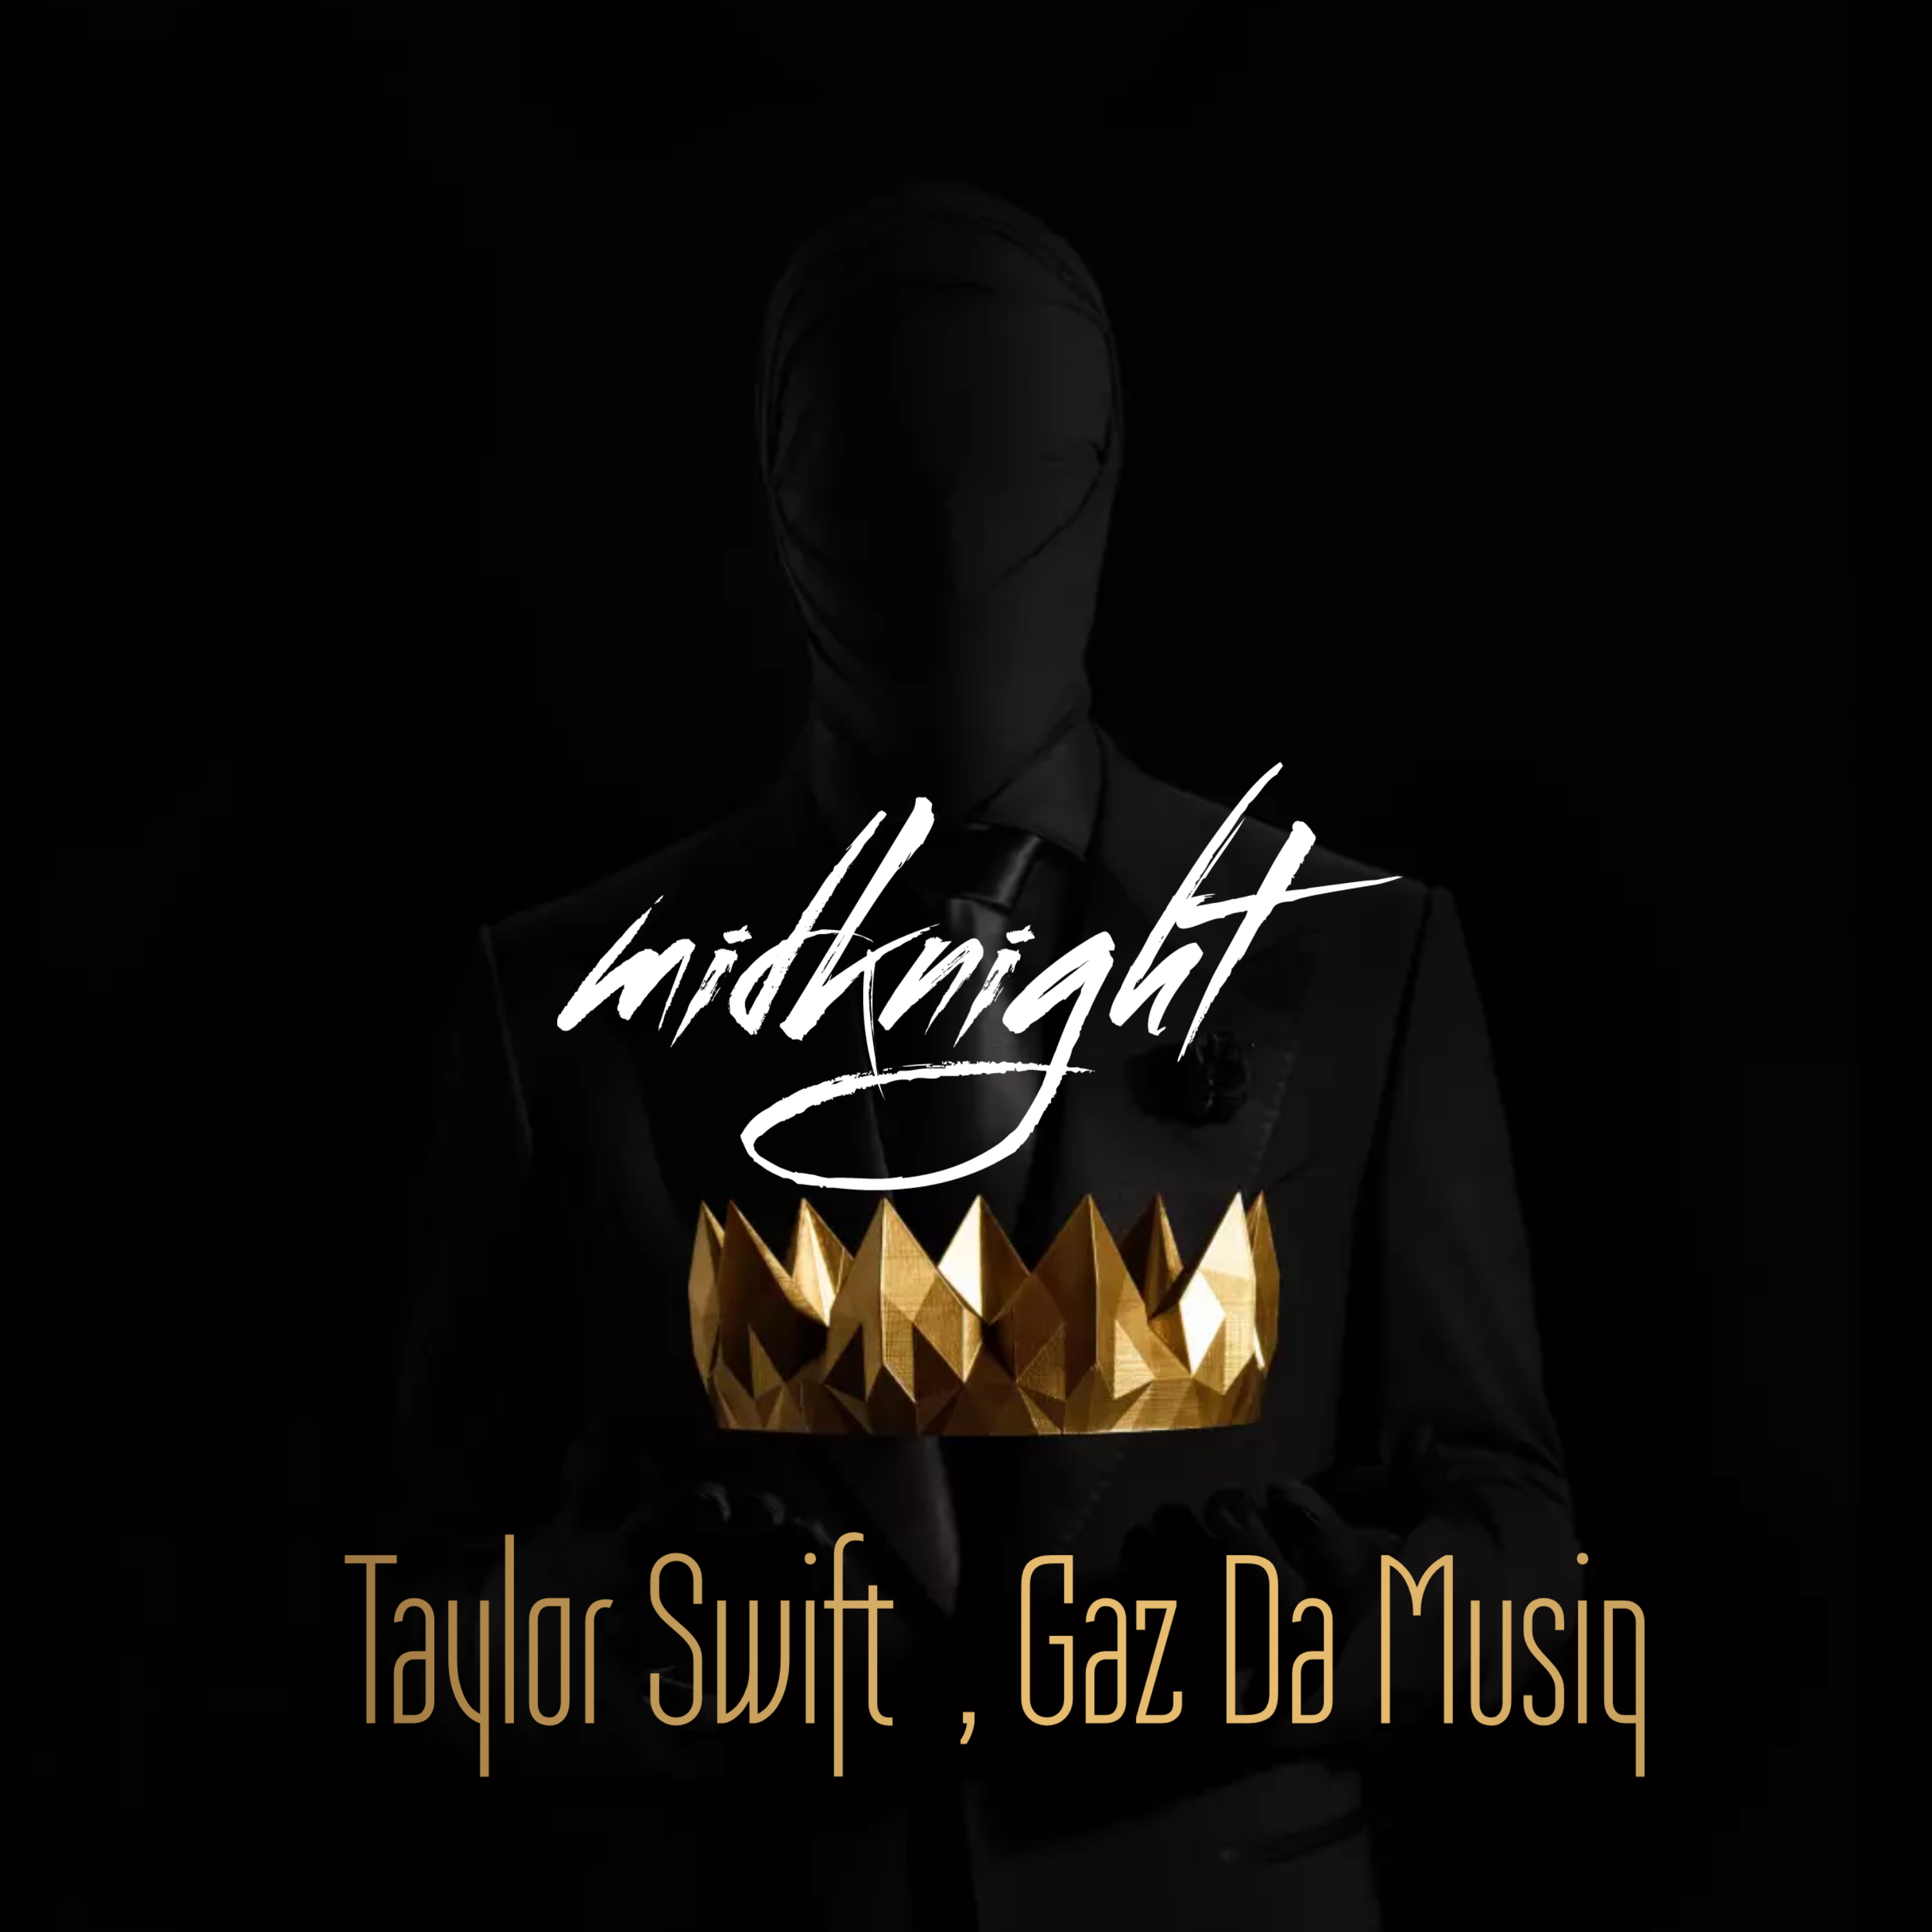 midknight - TAYLOR SWIFT & Gaz Da Musiq